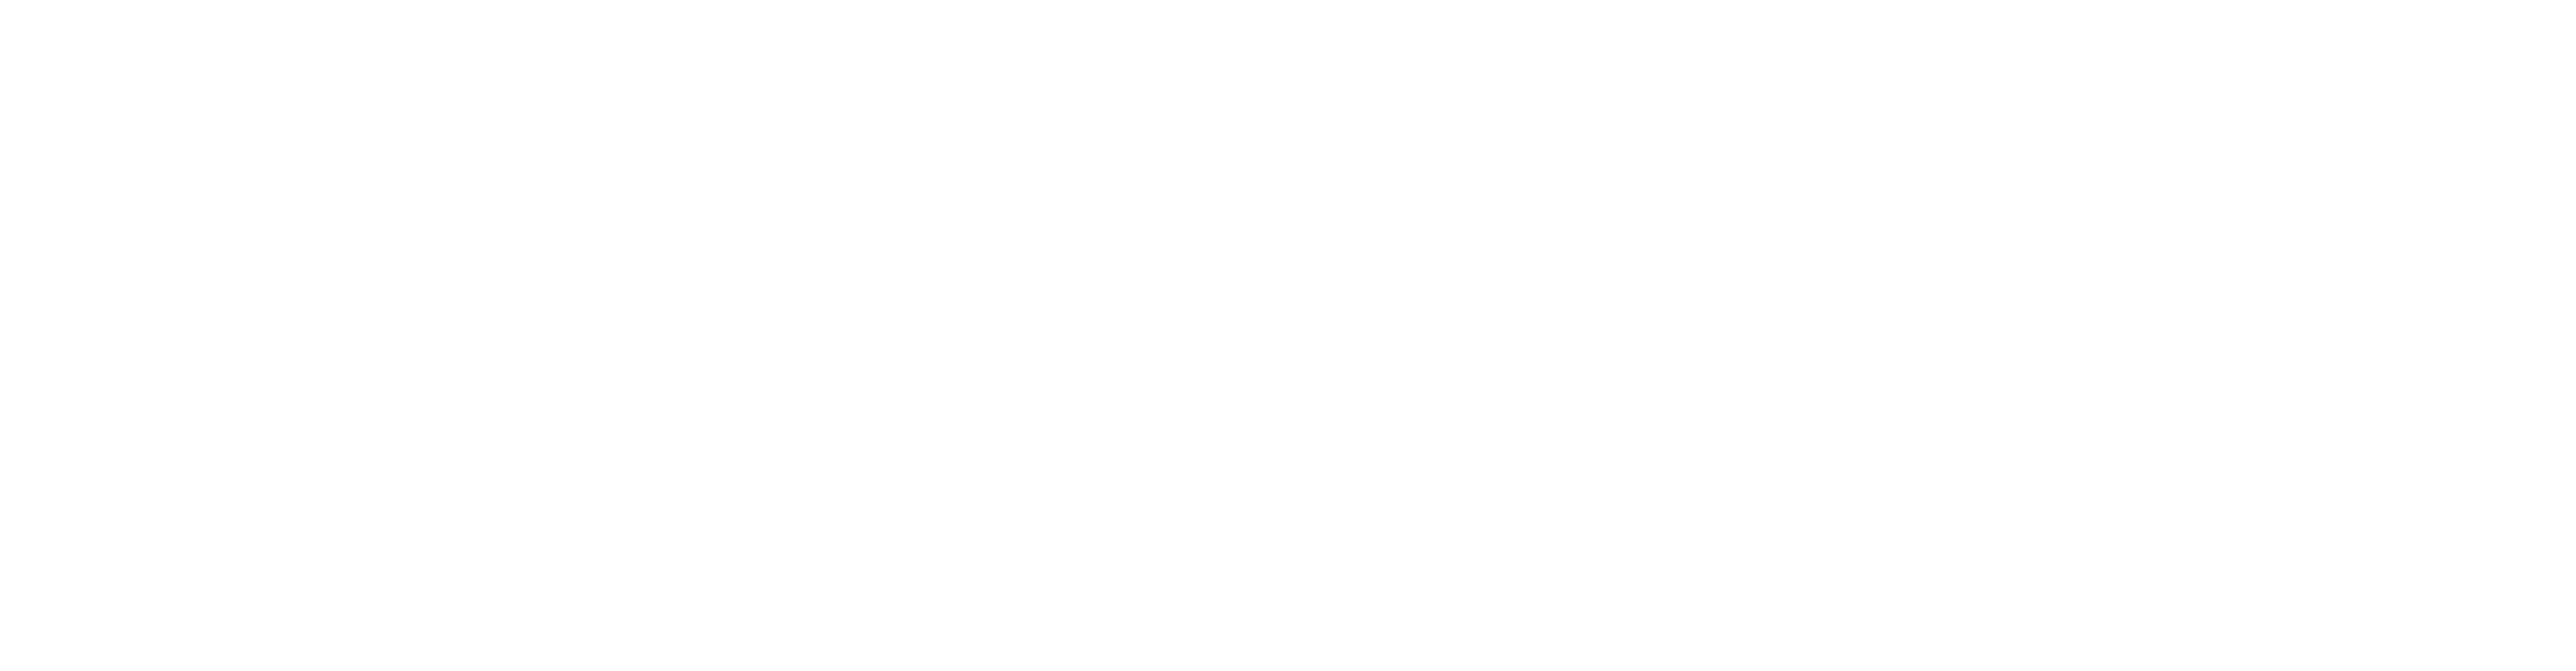 Planmar Financial